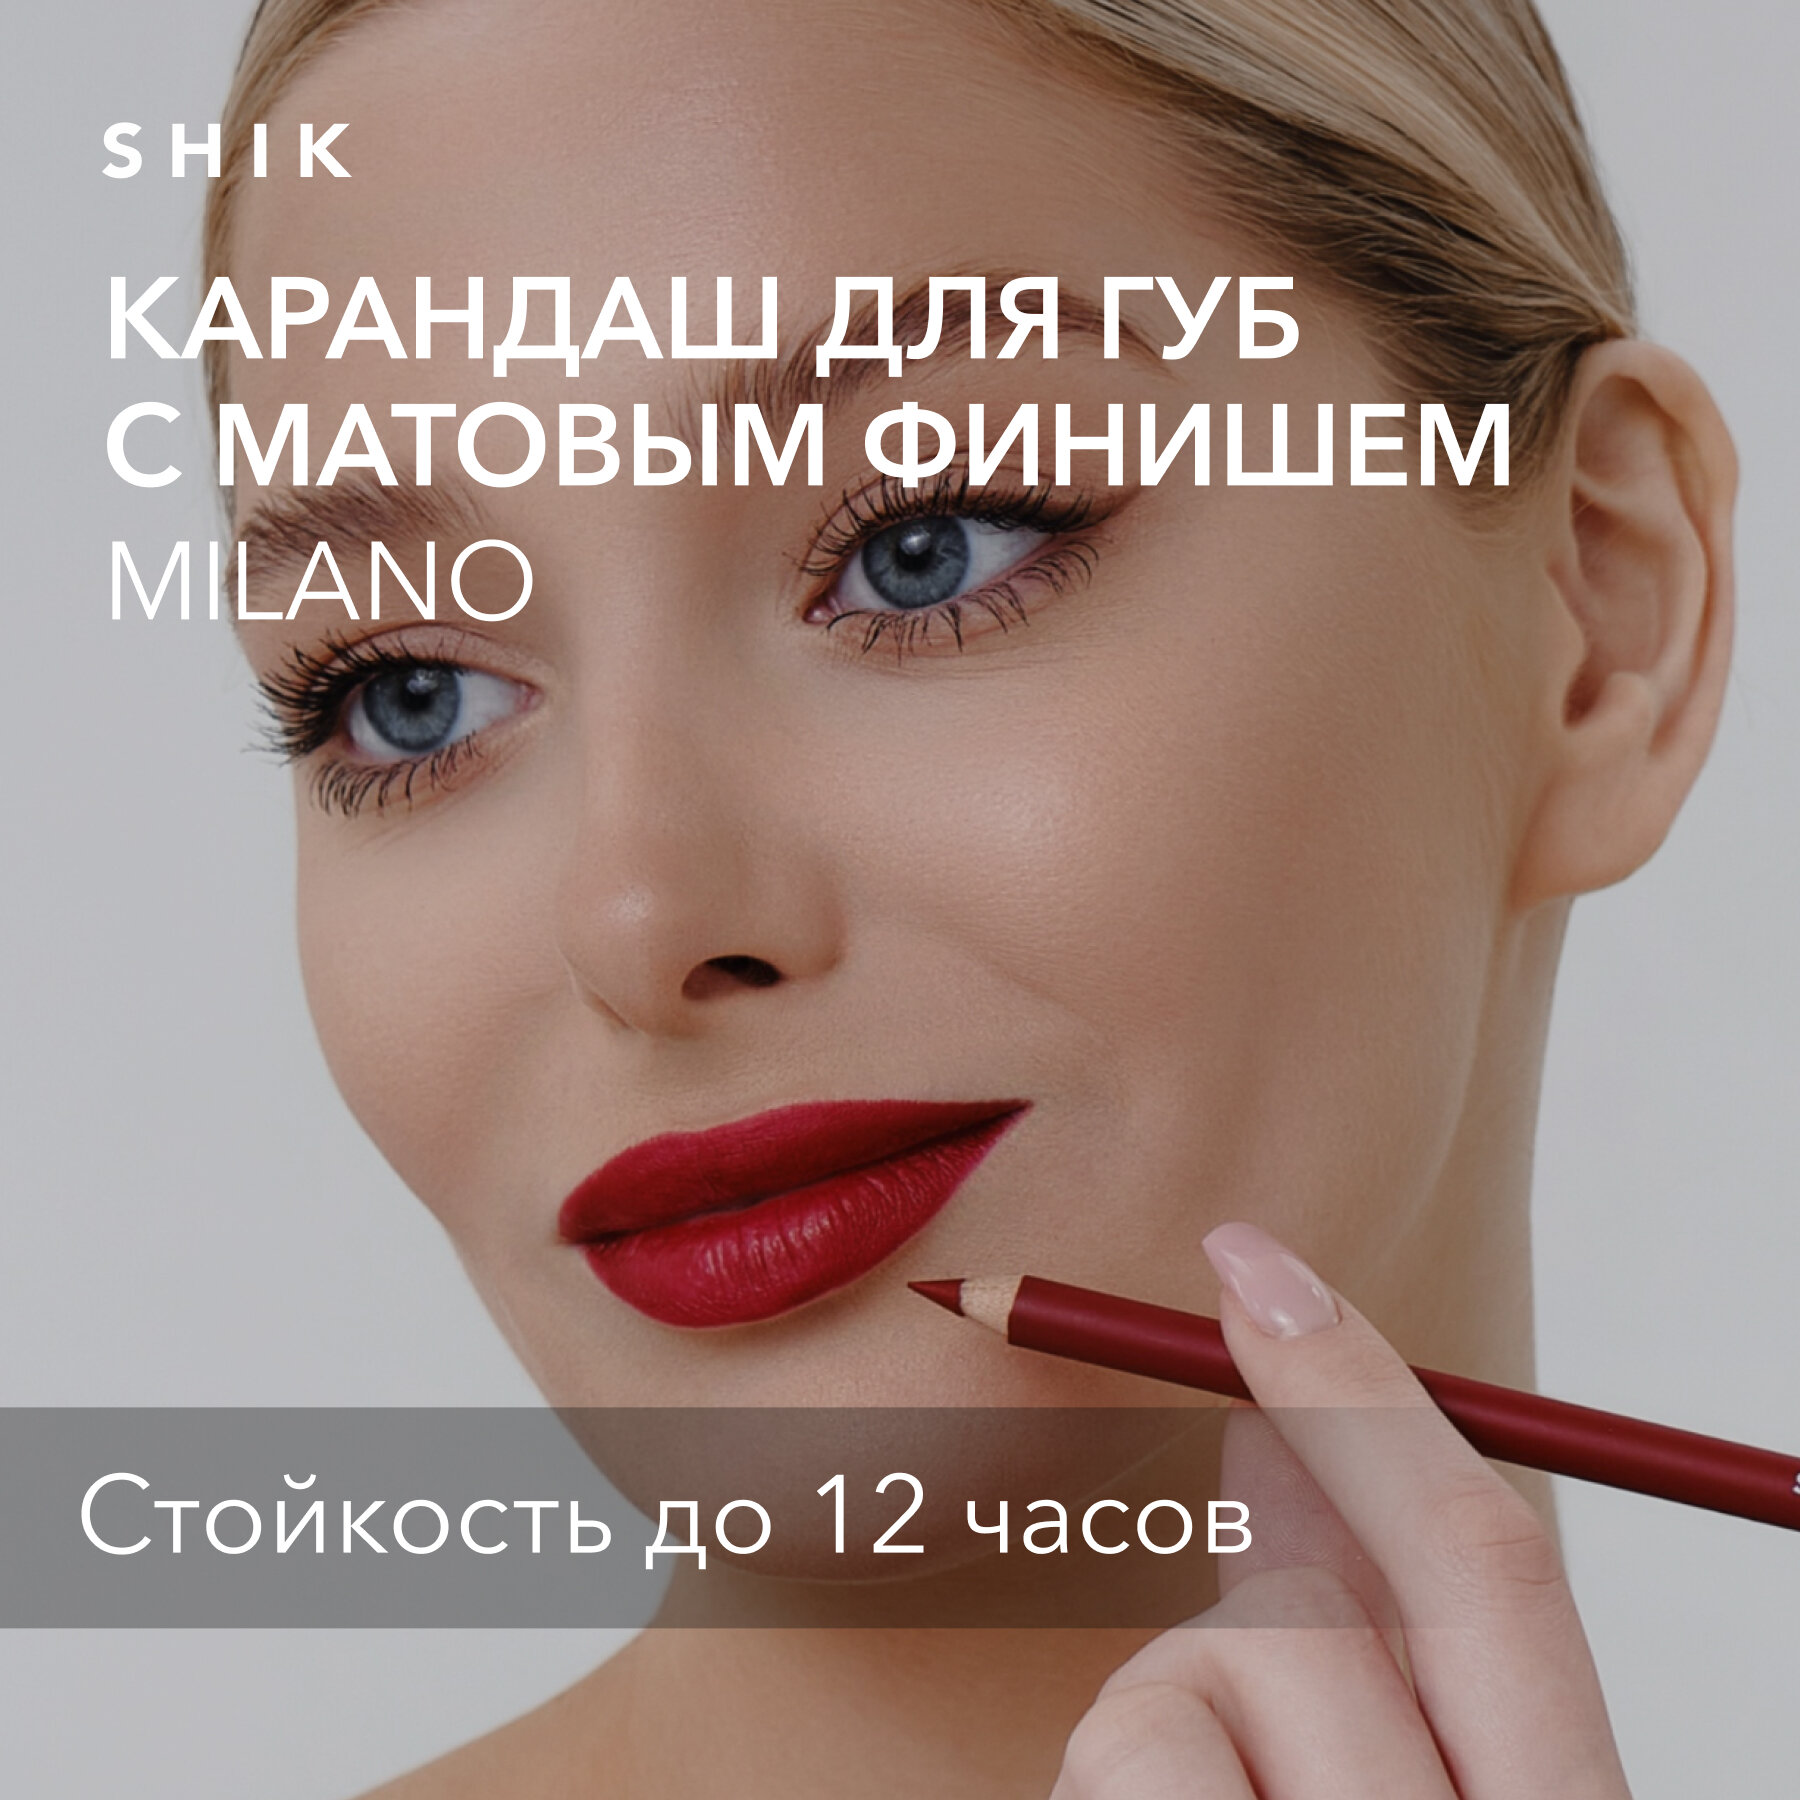 SHIK Карандаш для губ shik красный стойкий матовый яркий помада оттенок MILANO LIP PENCIL